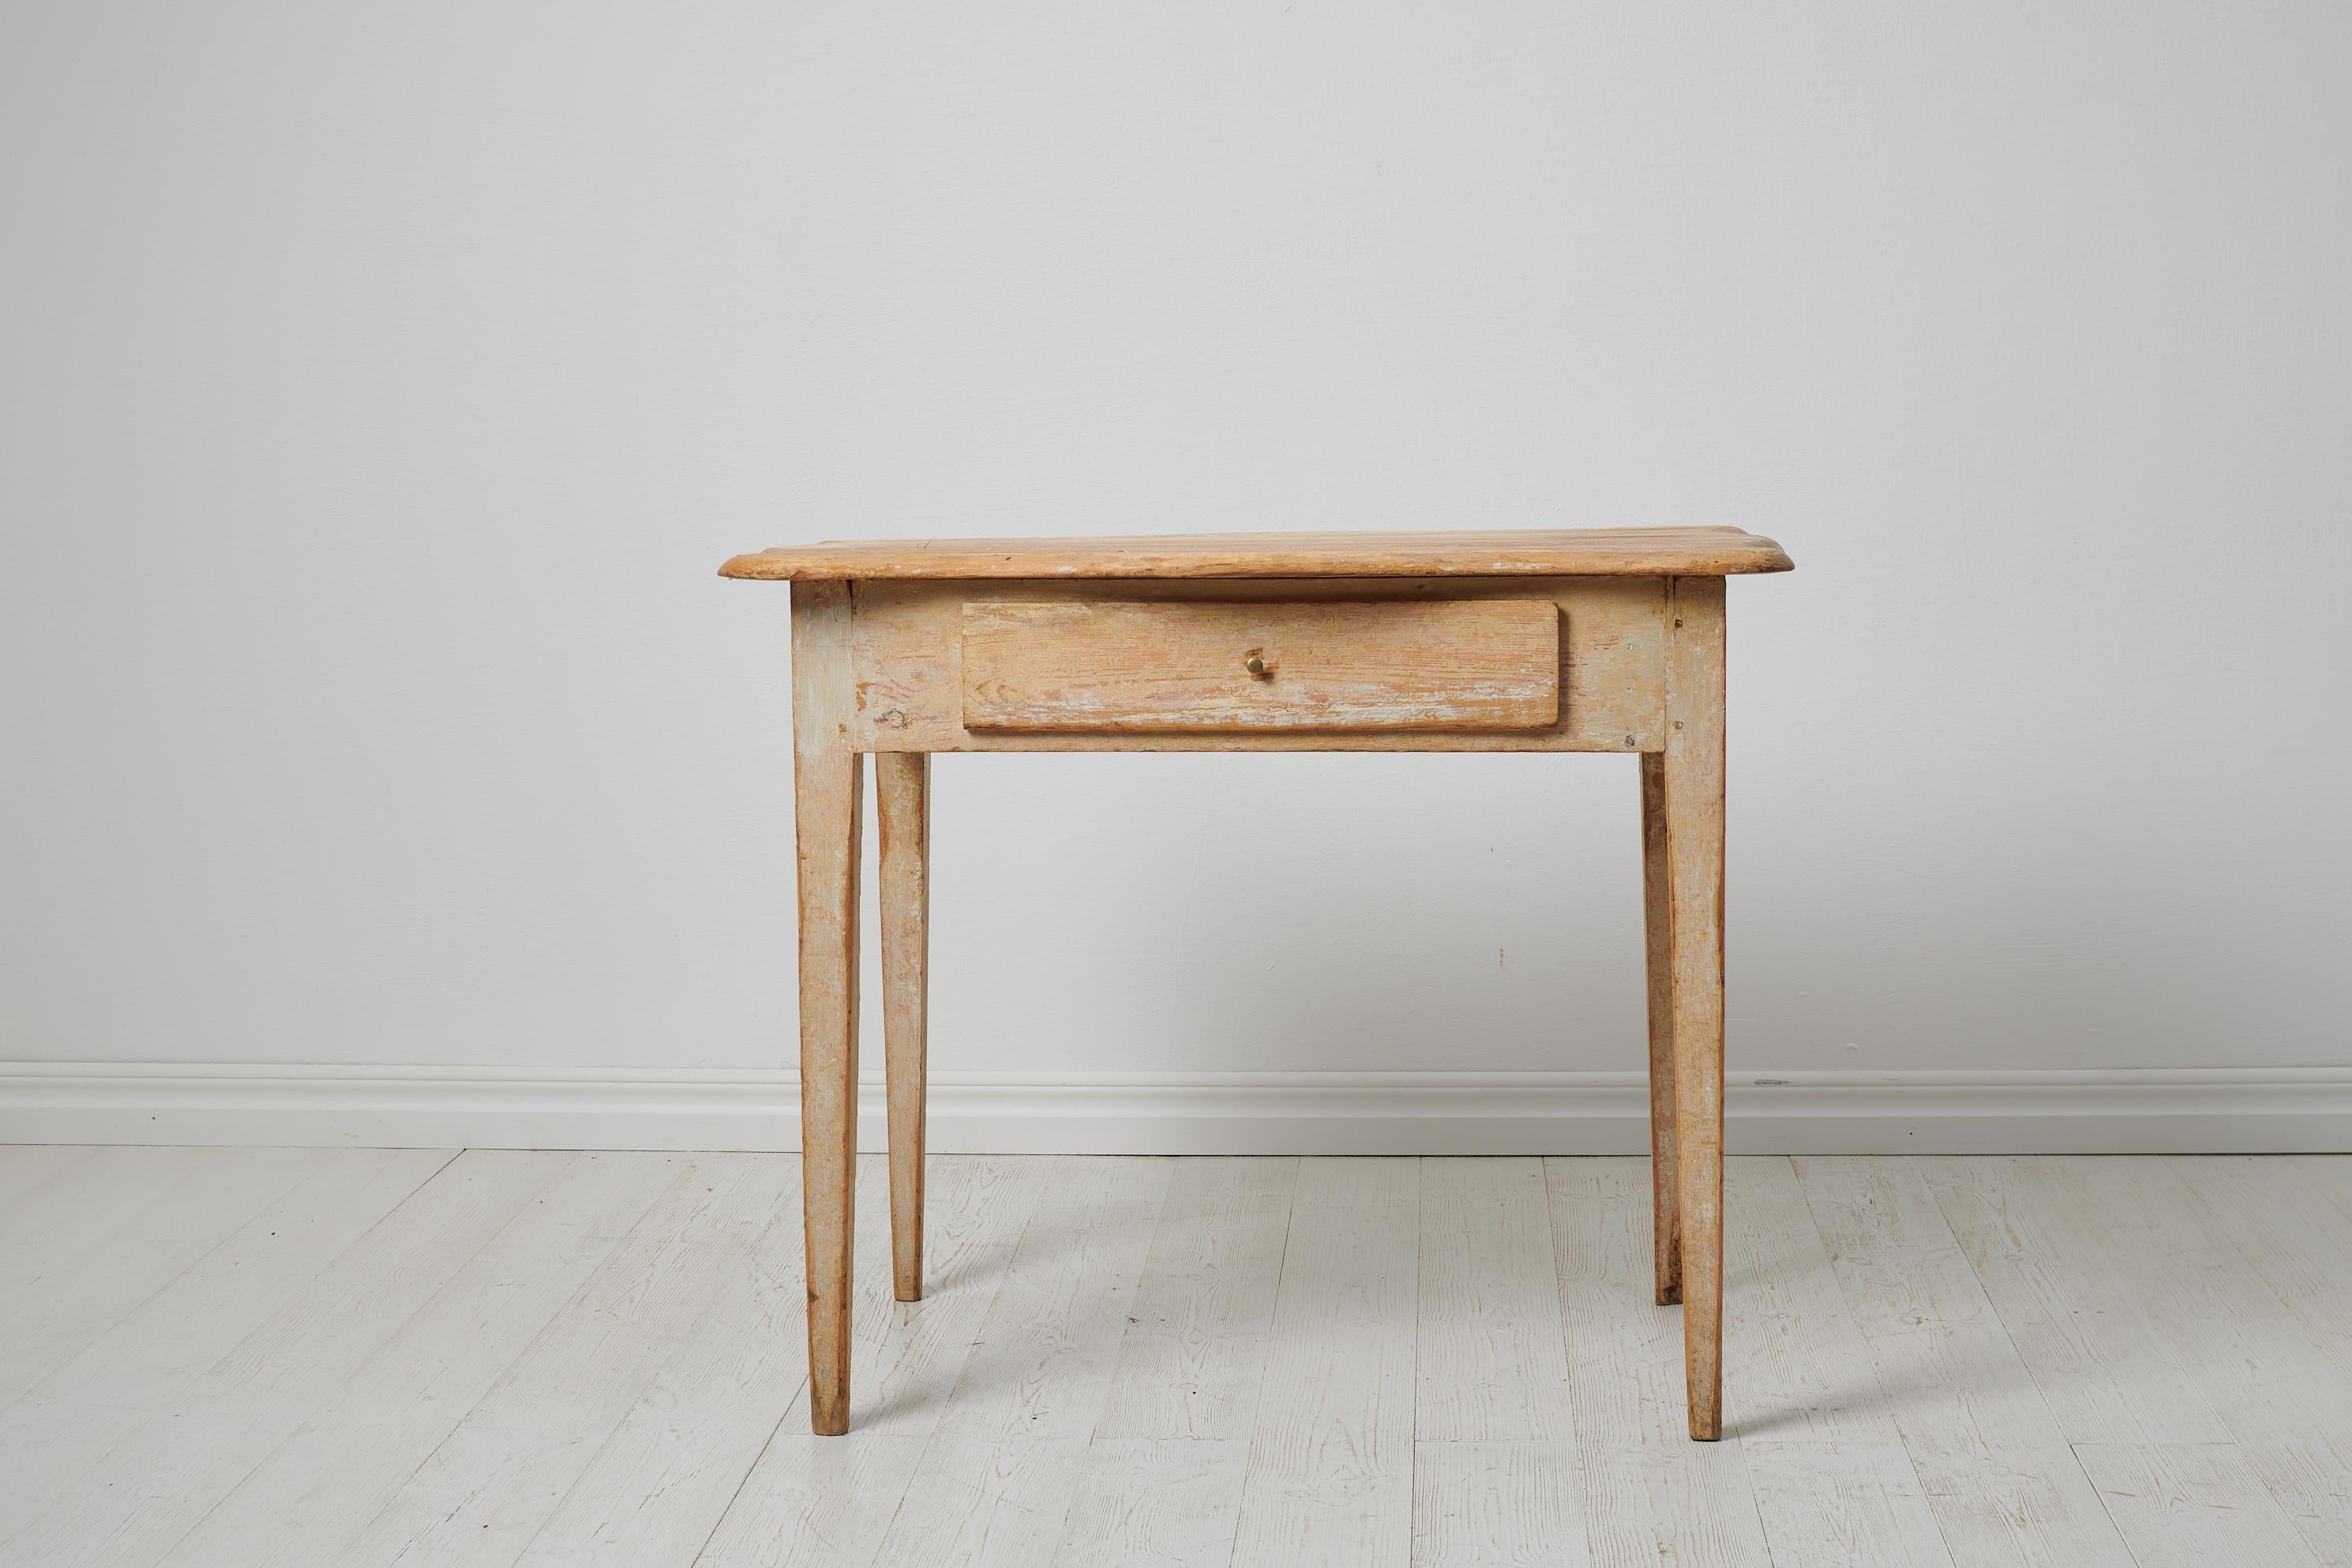 The House of Antiques Antiques table de maison de campagne du nord de la Suède, fabriquée vers 1820. La table a des pieds droits effilés et un tiroir. Le plateau de la table a une forme très inhabituelle avec un bord profilé tout autour, voir la